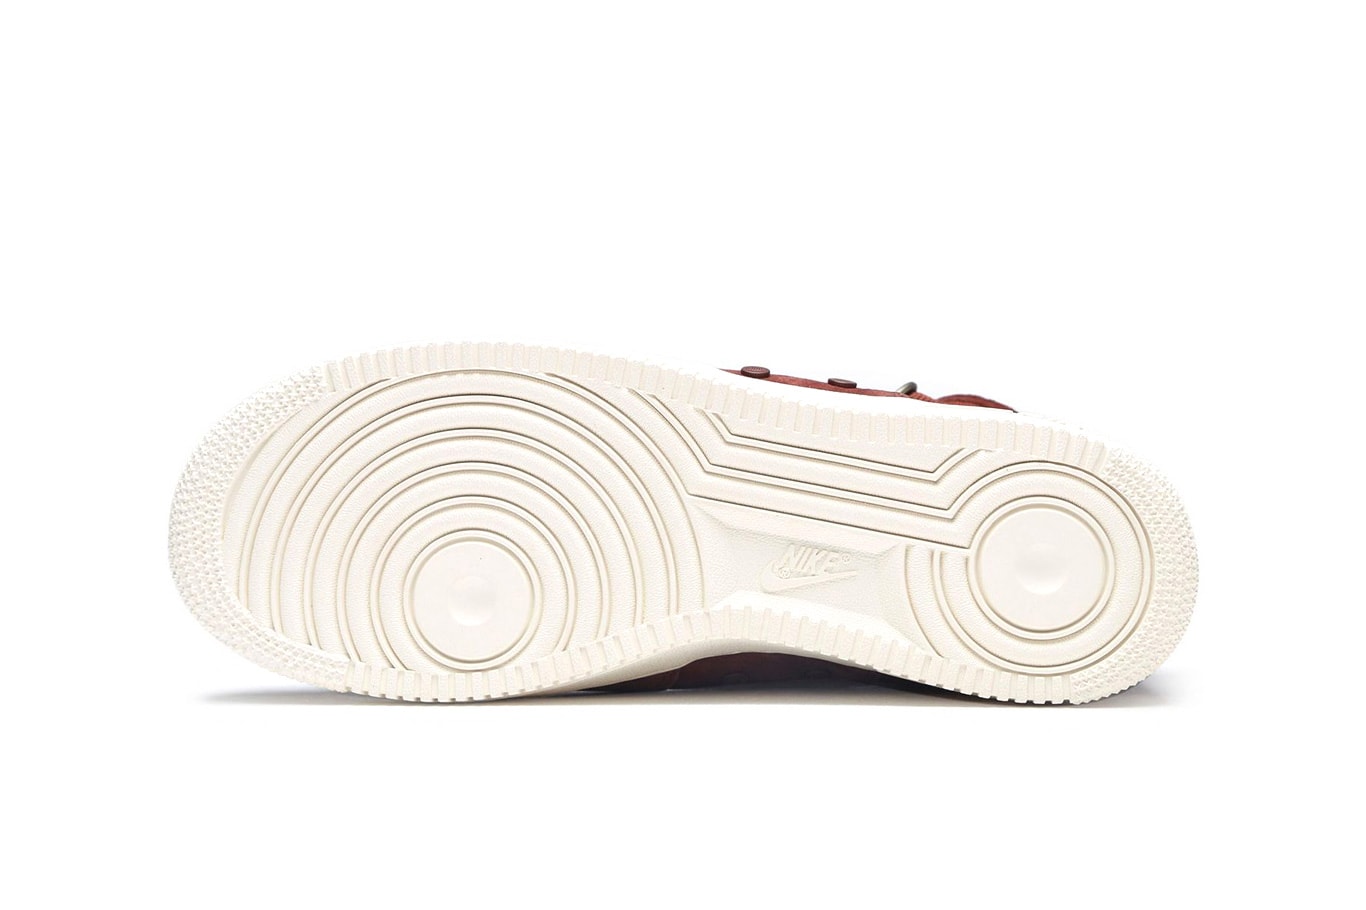 Nike SF-AF1 Mid Burgundy Release info purchase price summer colorway sneaker footwear